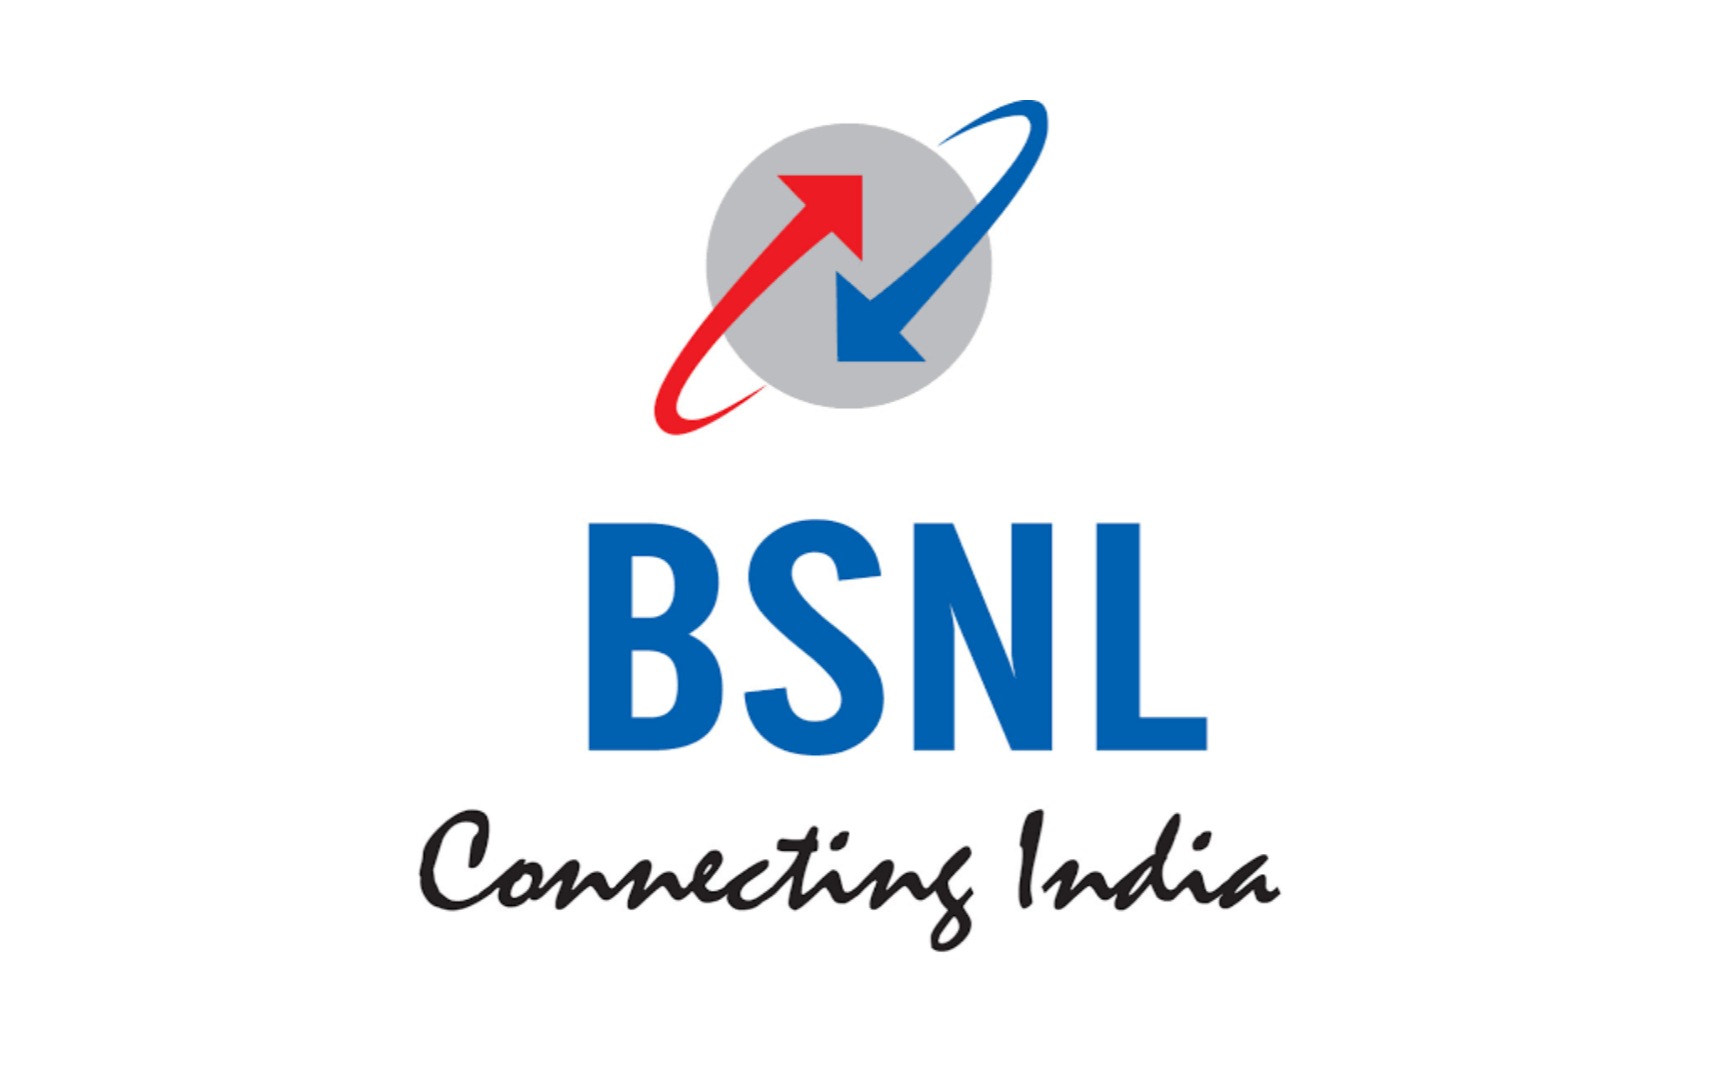 BSNL Recruitment 2021 in marathi भारत संचार निगम लिमिटेड मध्ये डिप्लोमा अप्रेंटिस पदाची भरती